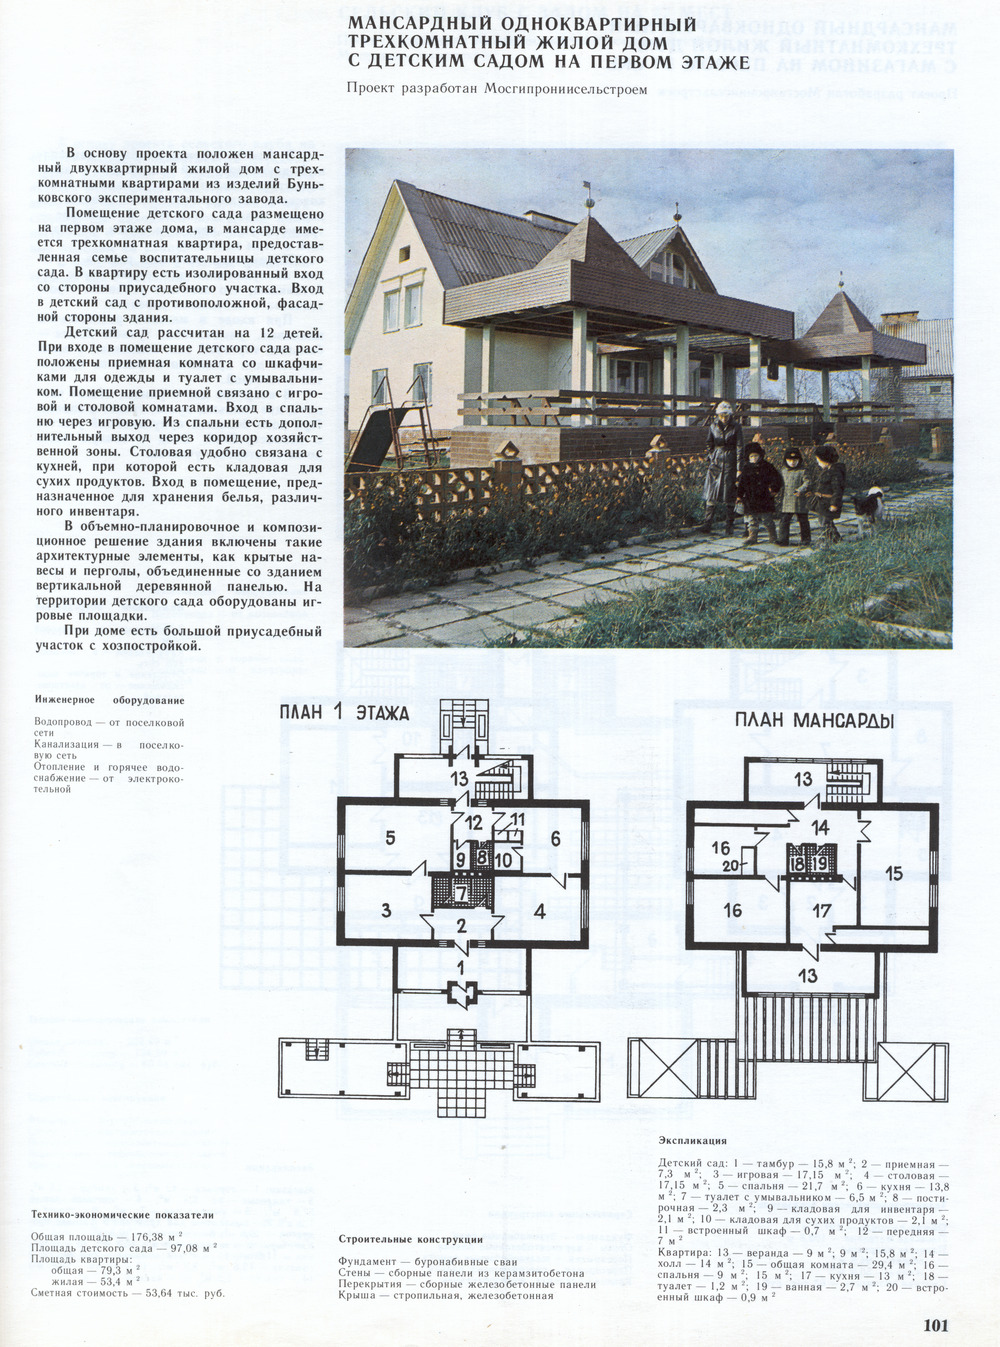 Project Мансардный одноквартирный трёхкомнатный жилой дом с детским садом на первом этаже (проект МосгипроНИИсельстроя) — Drawings and Plans